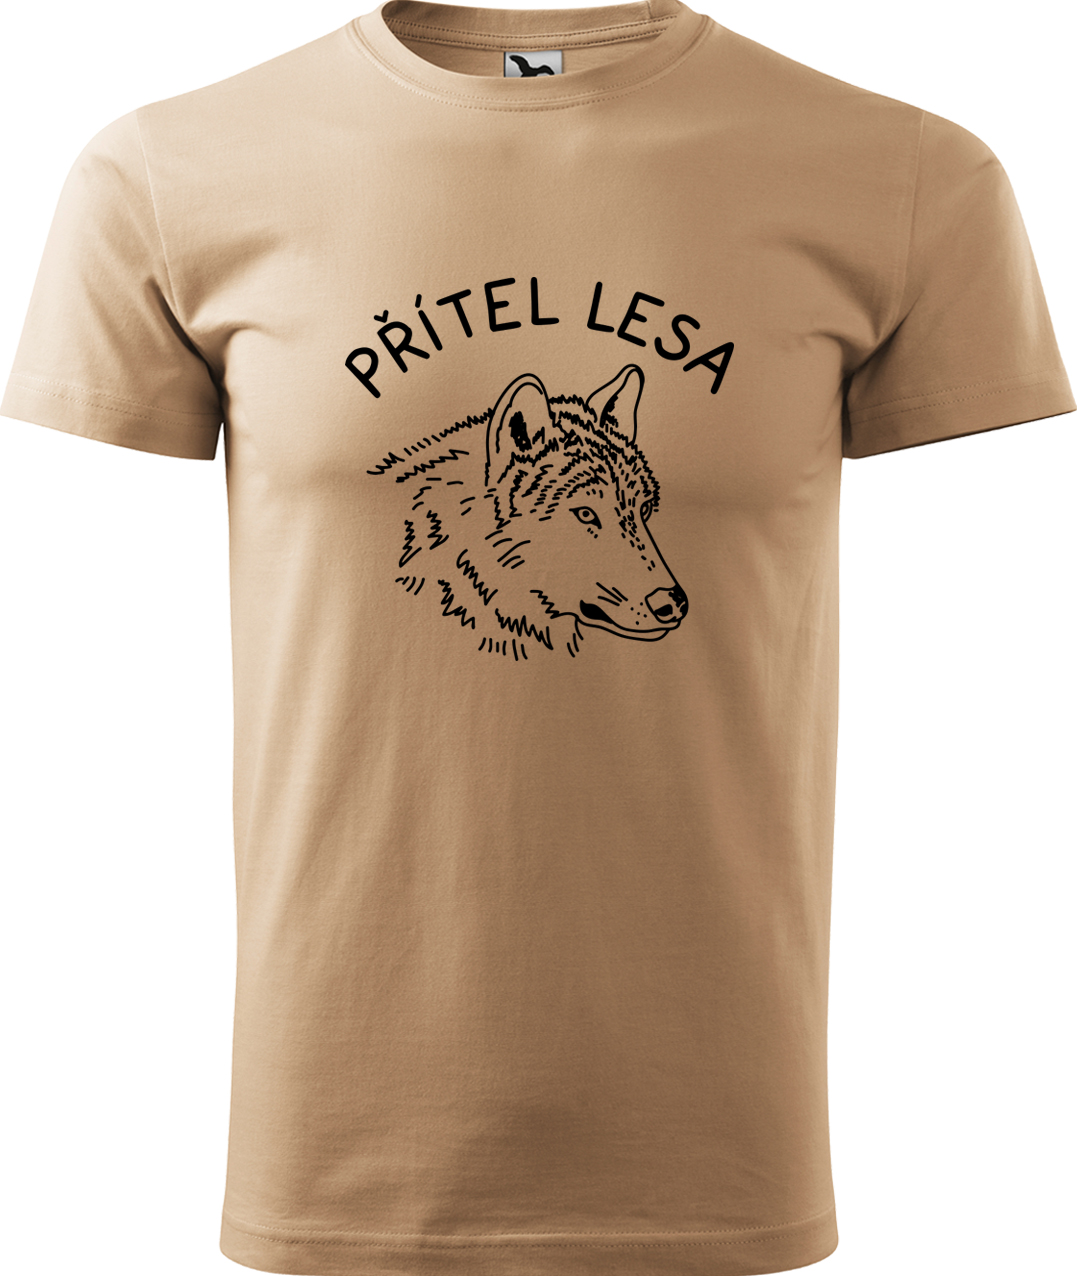 Pánské tričko s vlkem - Přítel lesa Velikost: 3XL, Barva: Písková (08), Střih: pánský